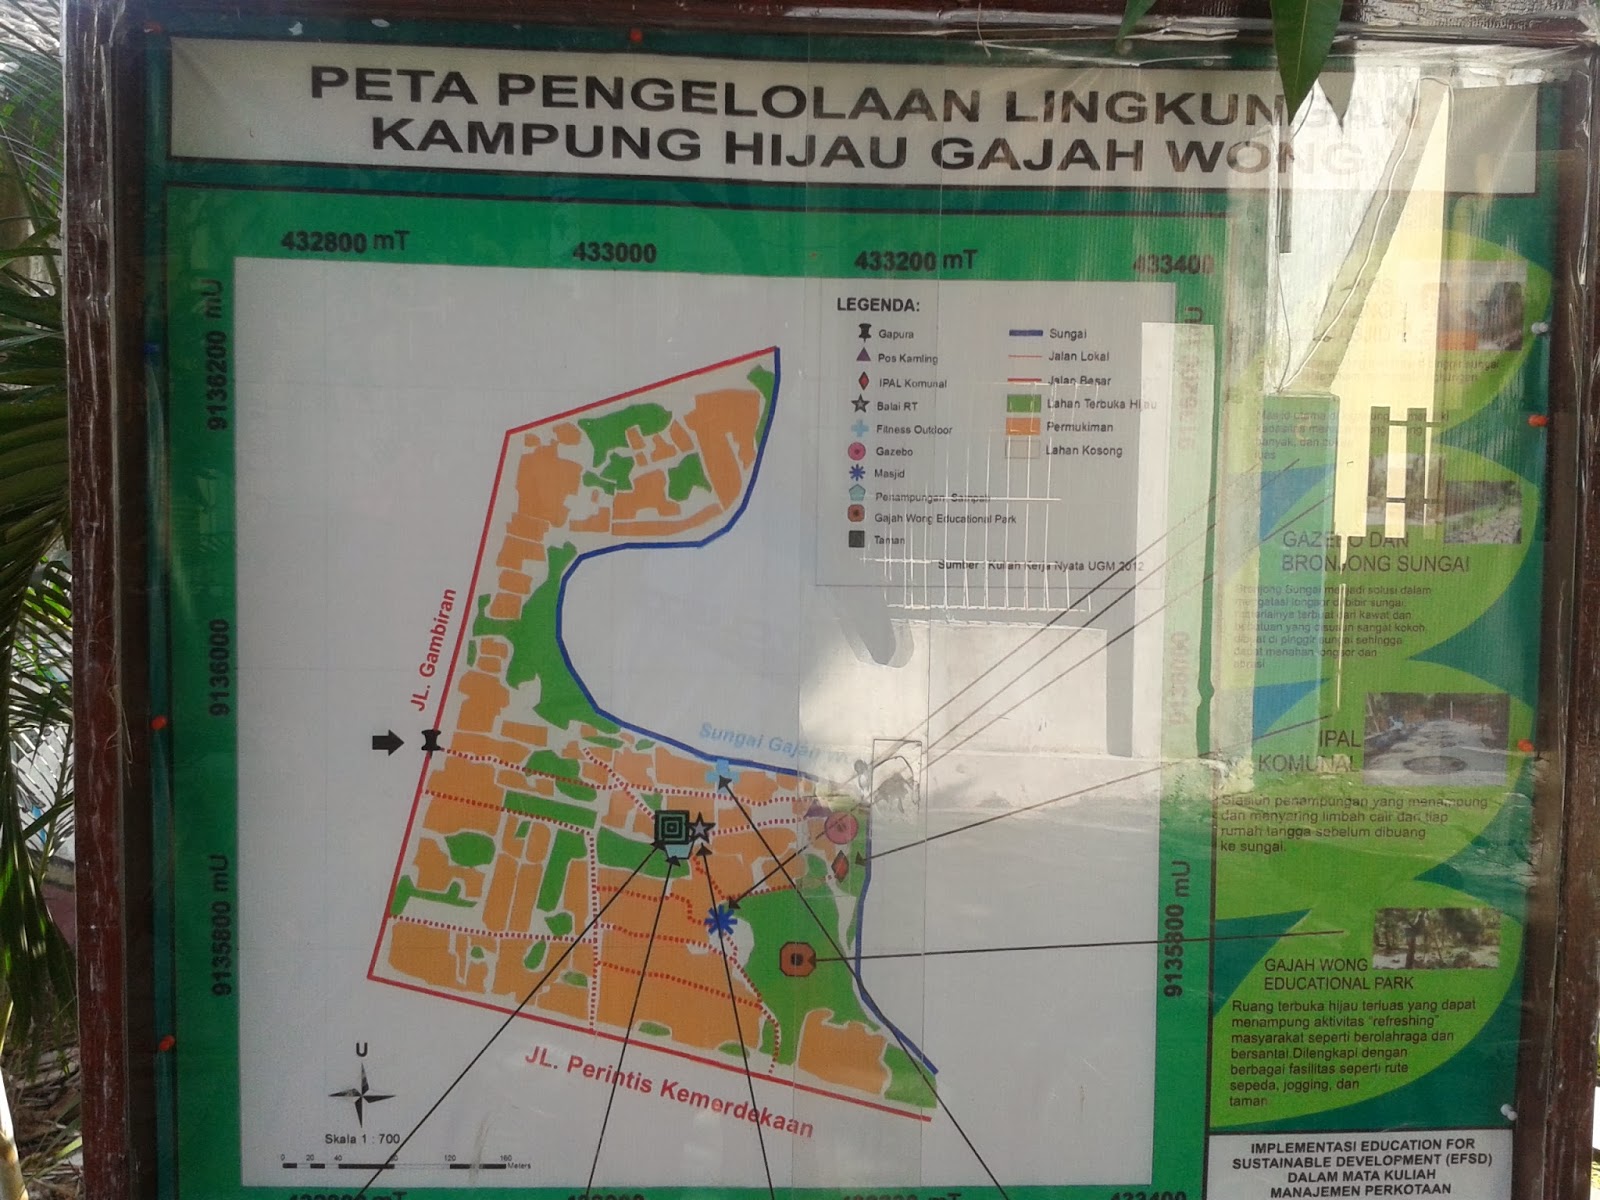 Peta kampung wisata gajah wong